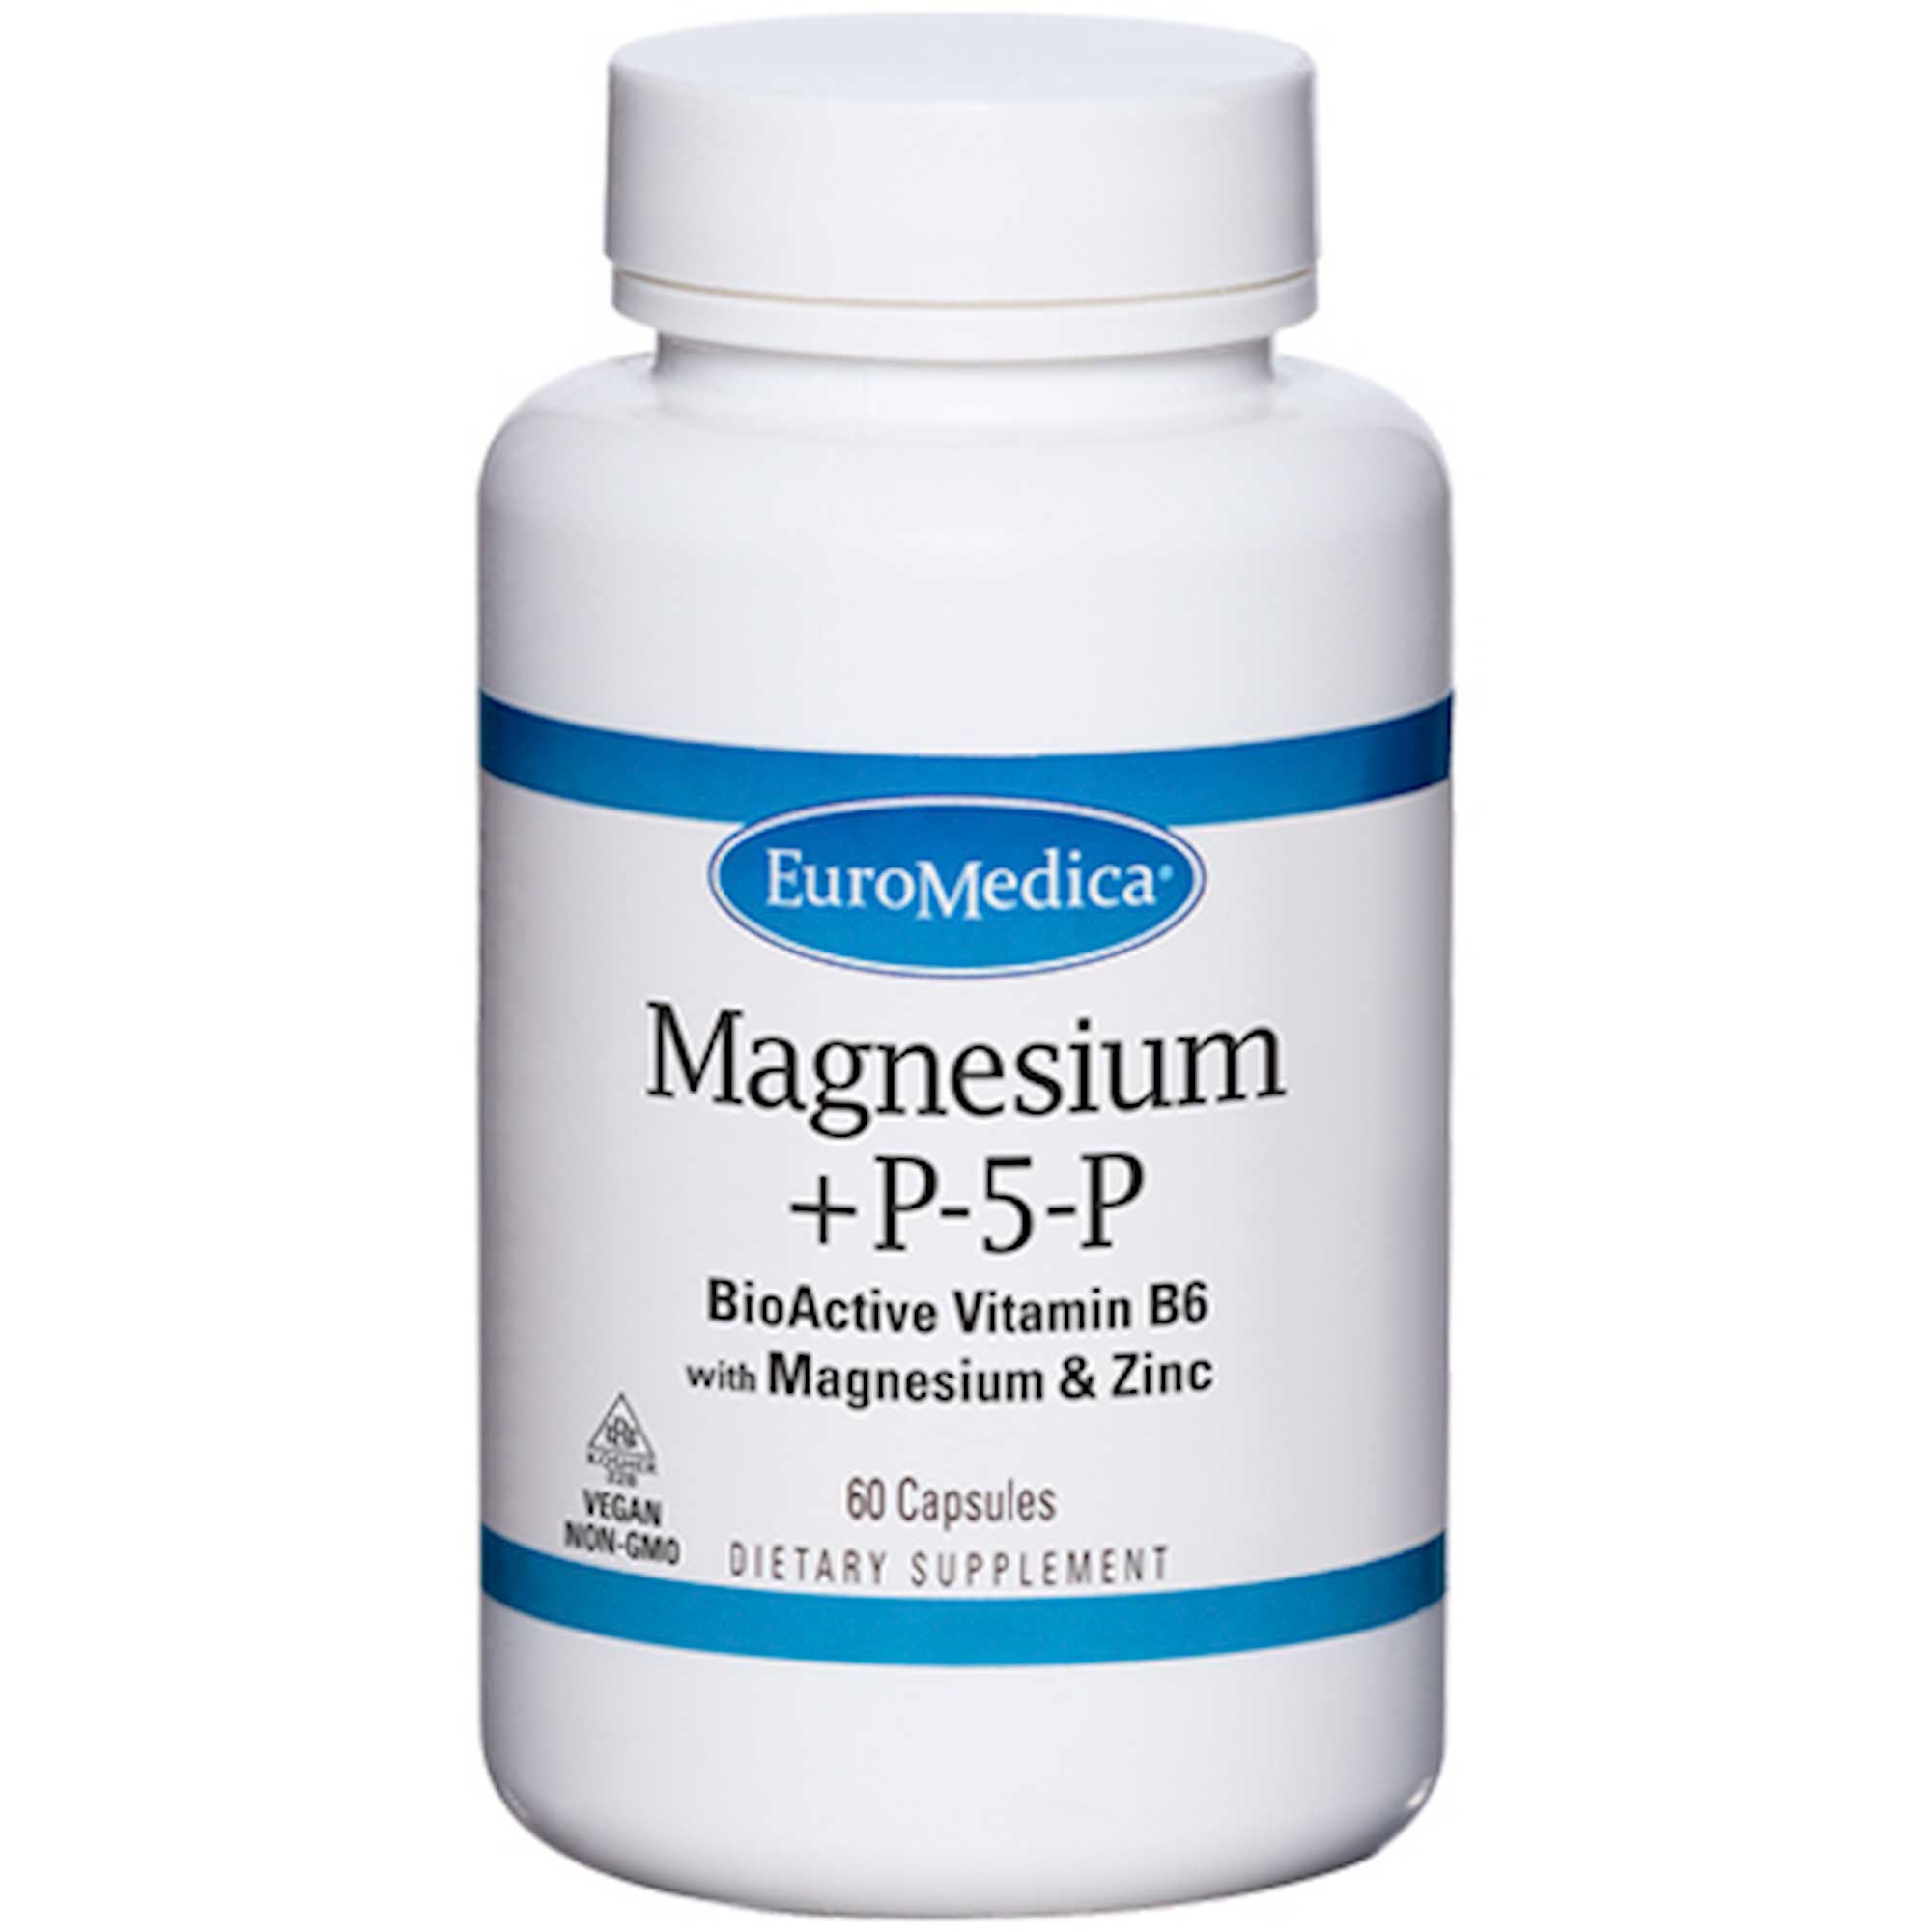 EuroMedica Magnesium + P-5-P